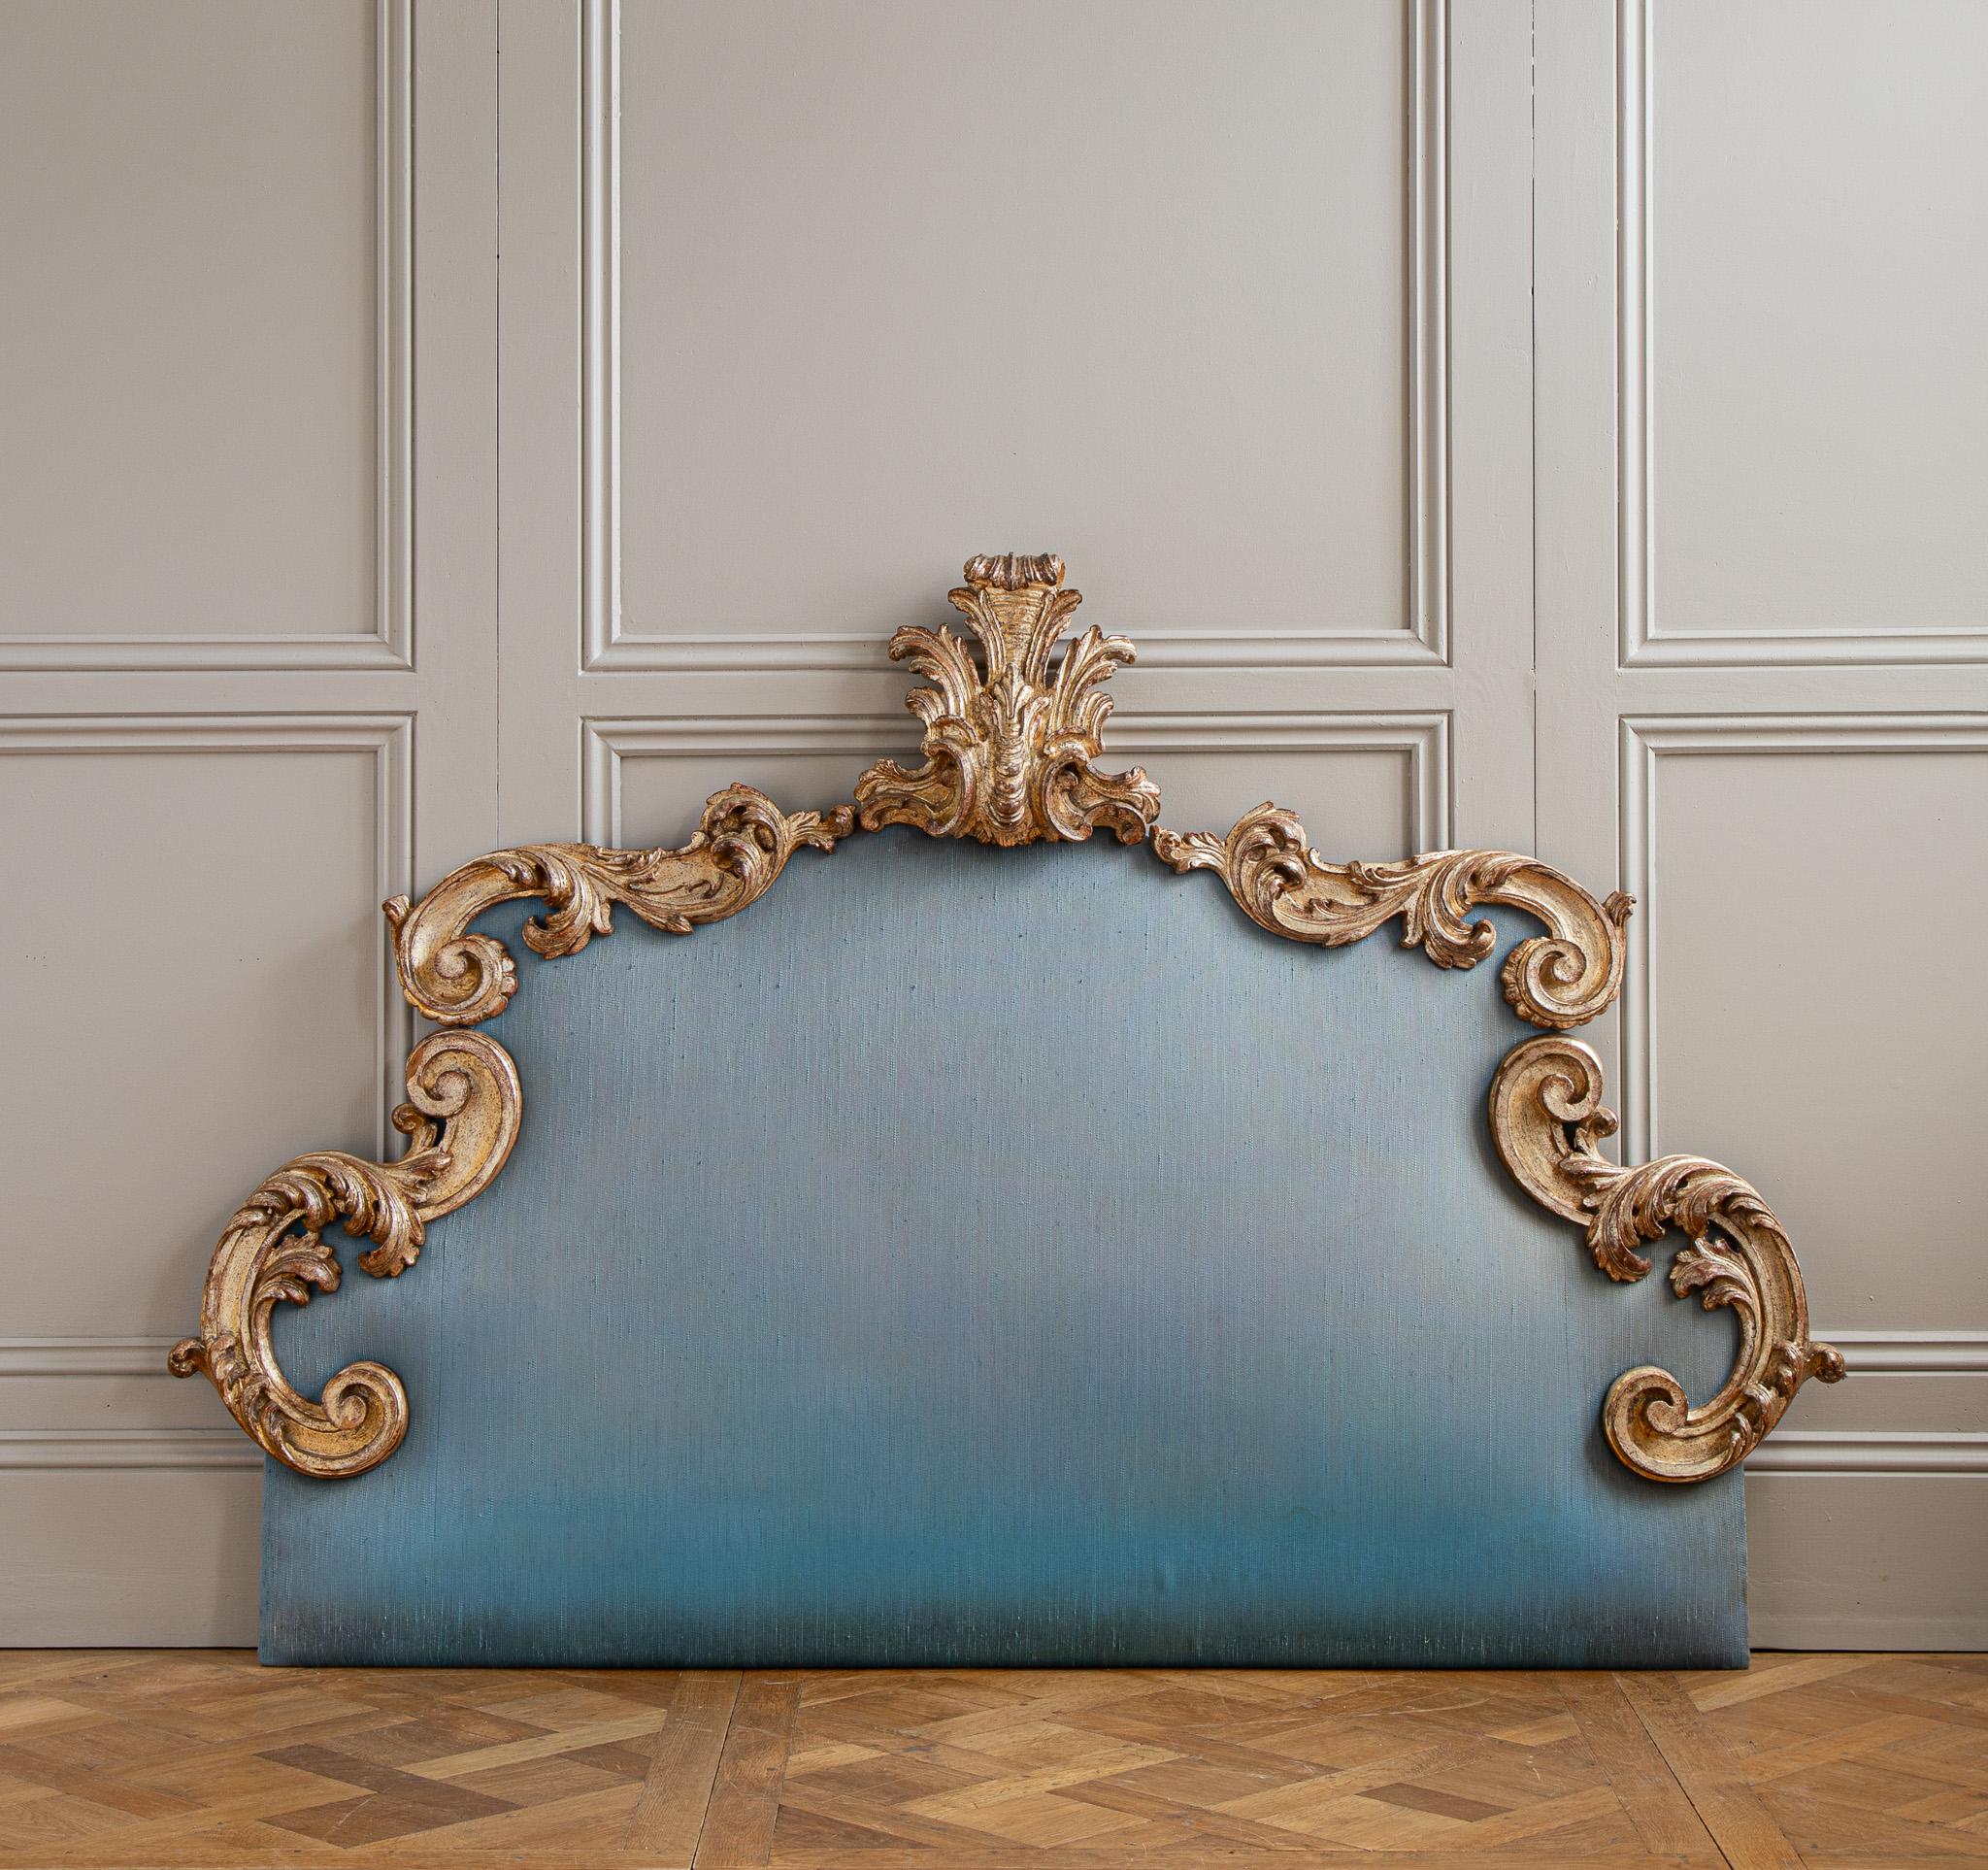 Une grande tête de lit de Florence, Italie, circa 1900, capturant l'élégance ornée de la période Rococo. La tête de lit est composée de courbes en S embellies avec une grande feuille d'acanthe stylisée à son sommet pour le motif central. La pièce